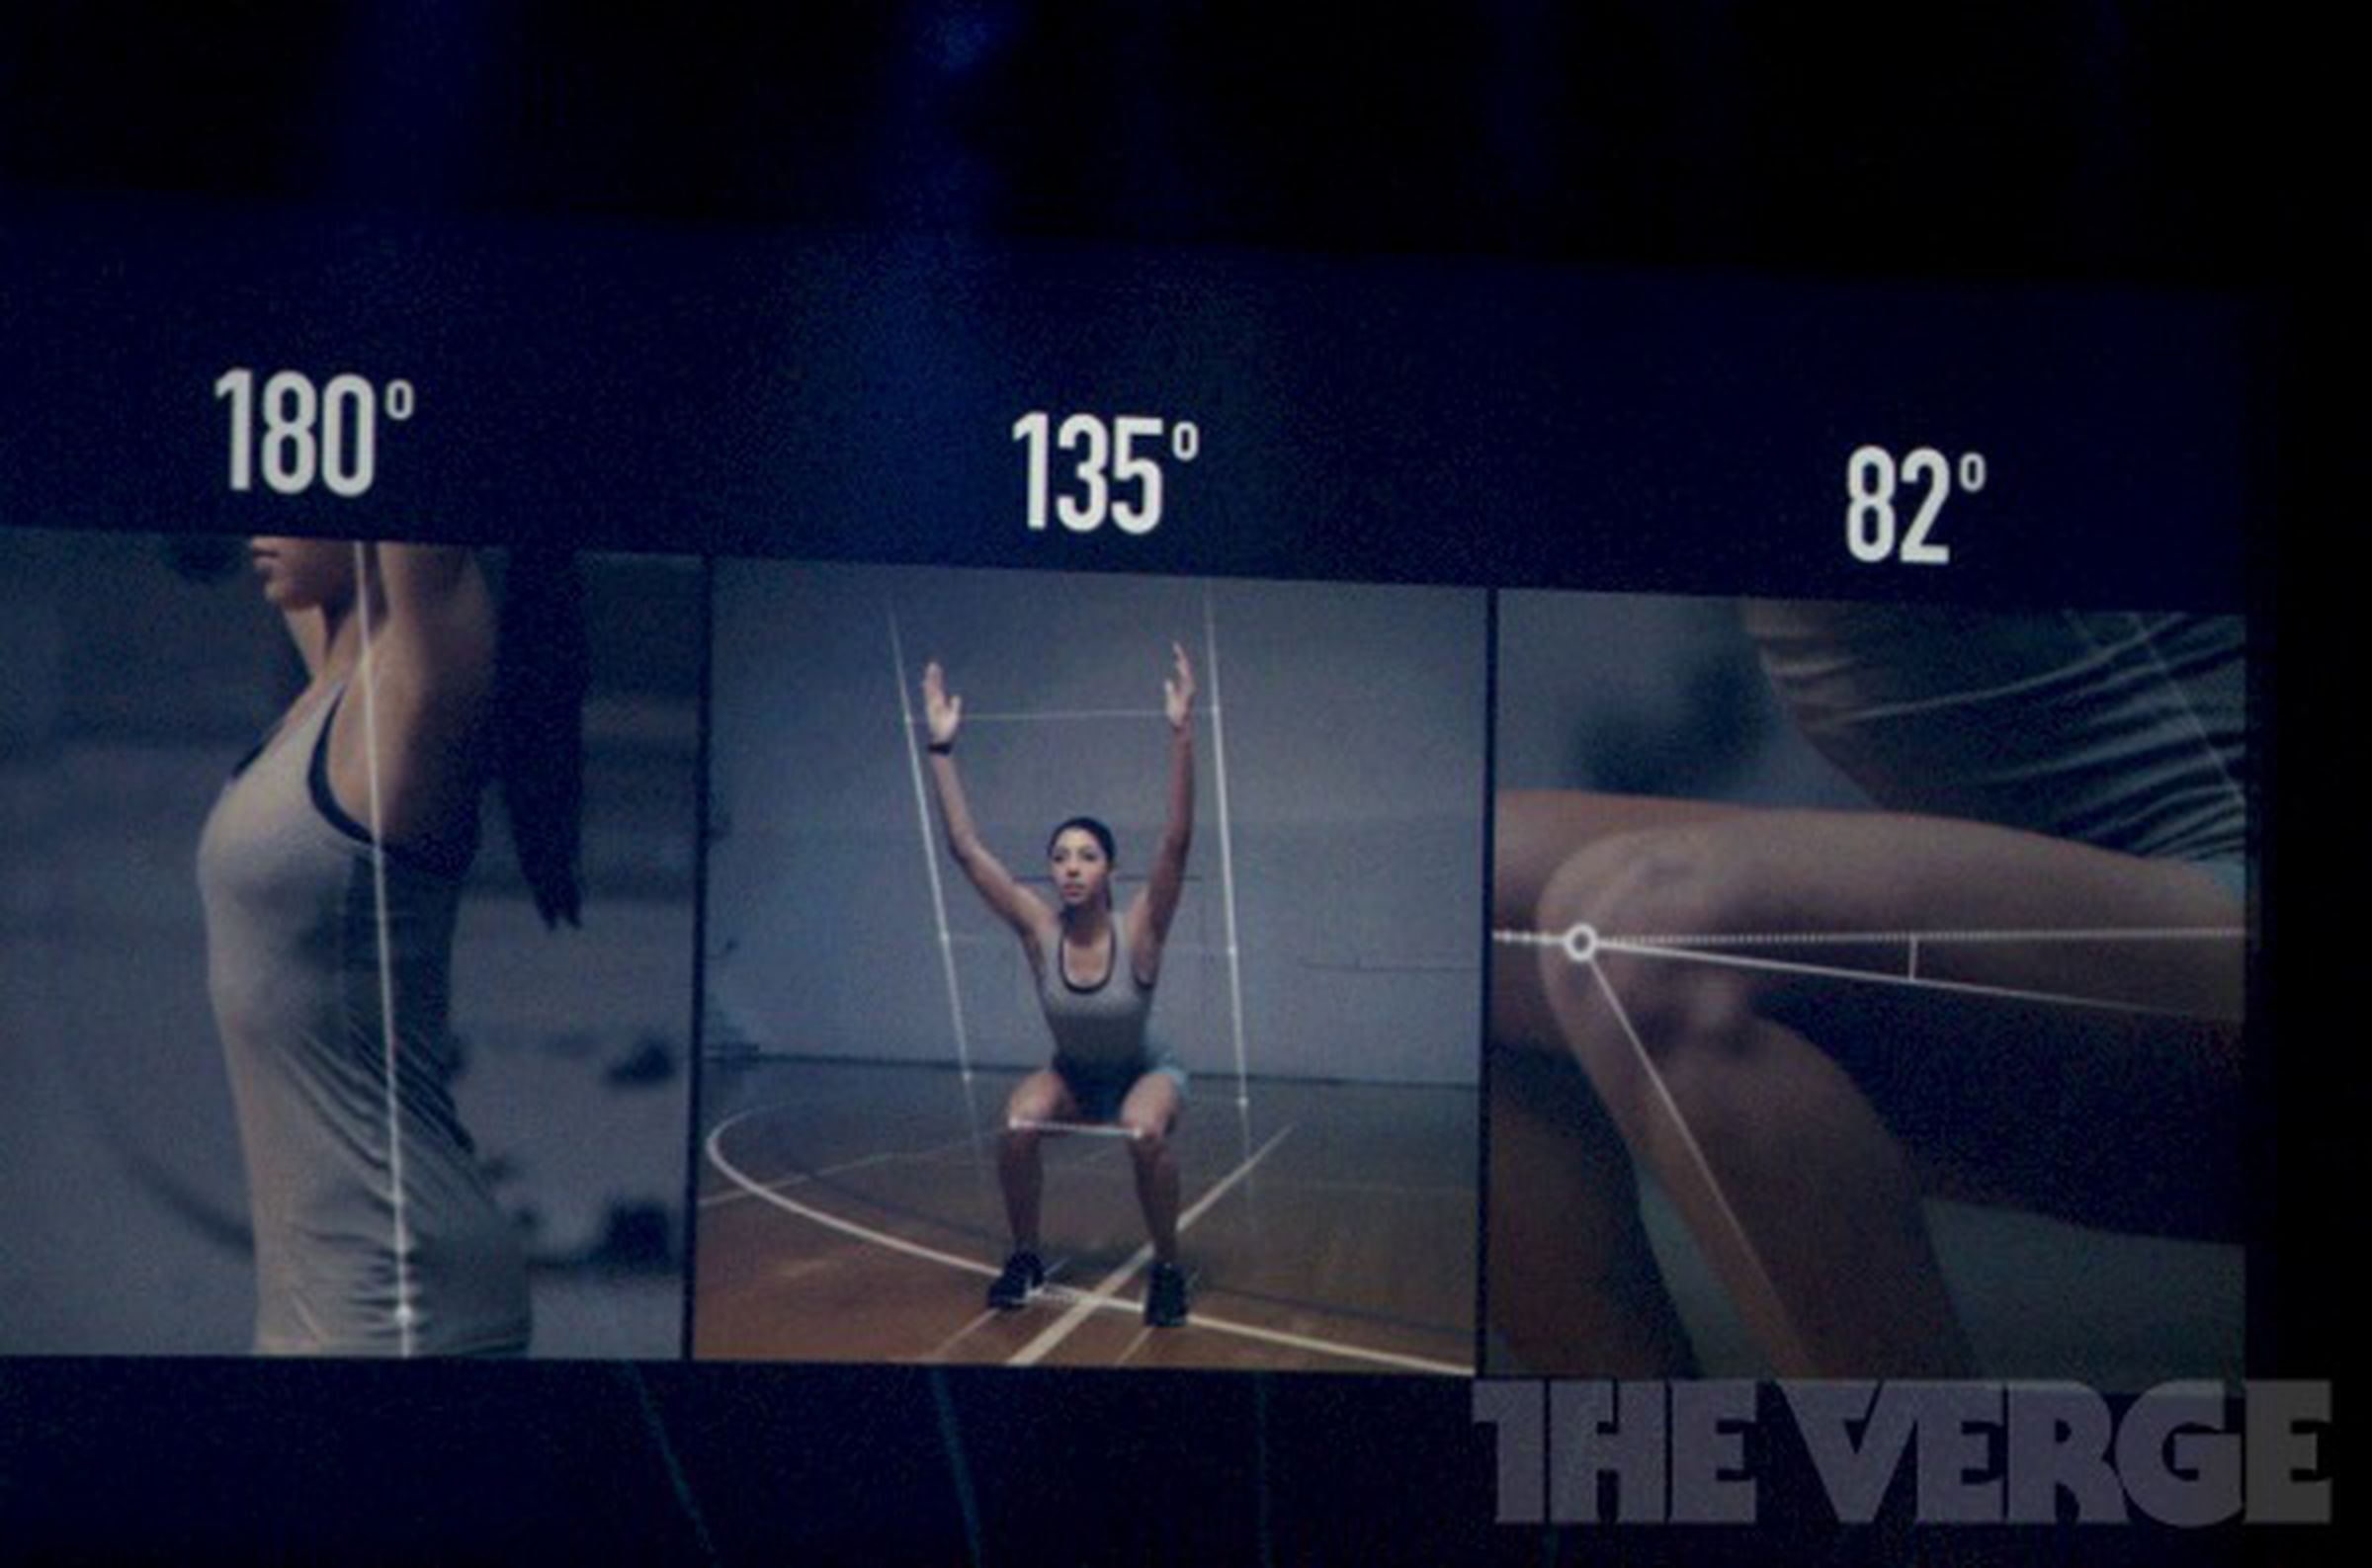 Nike+ for Xbox E3 2012 press conference photos